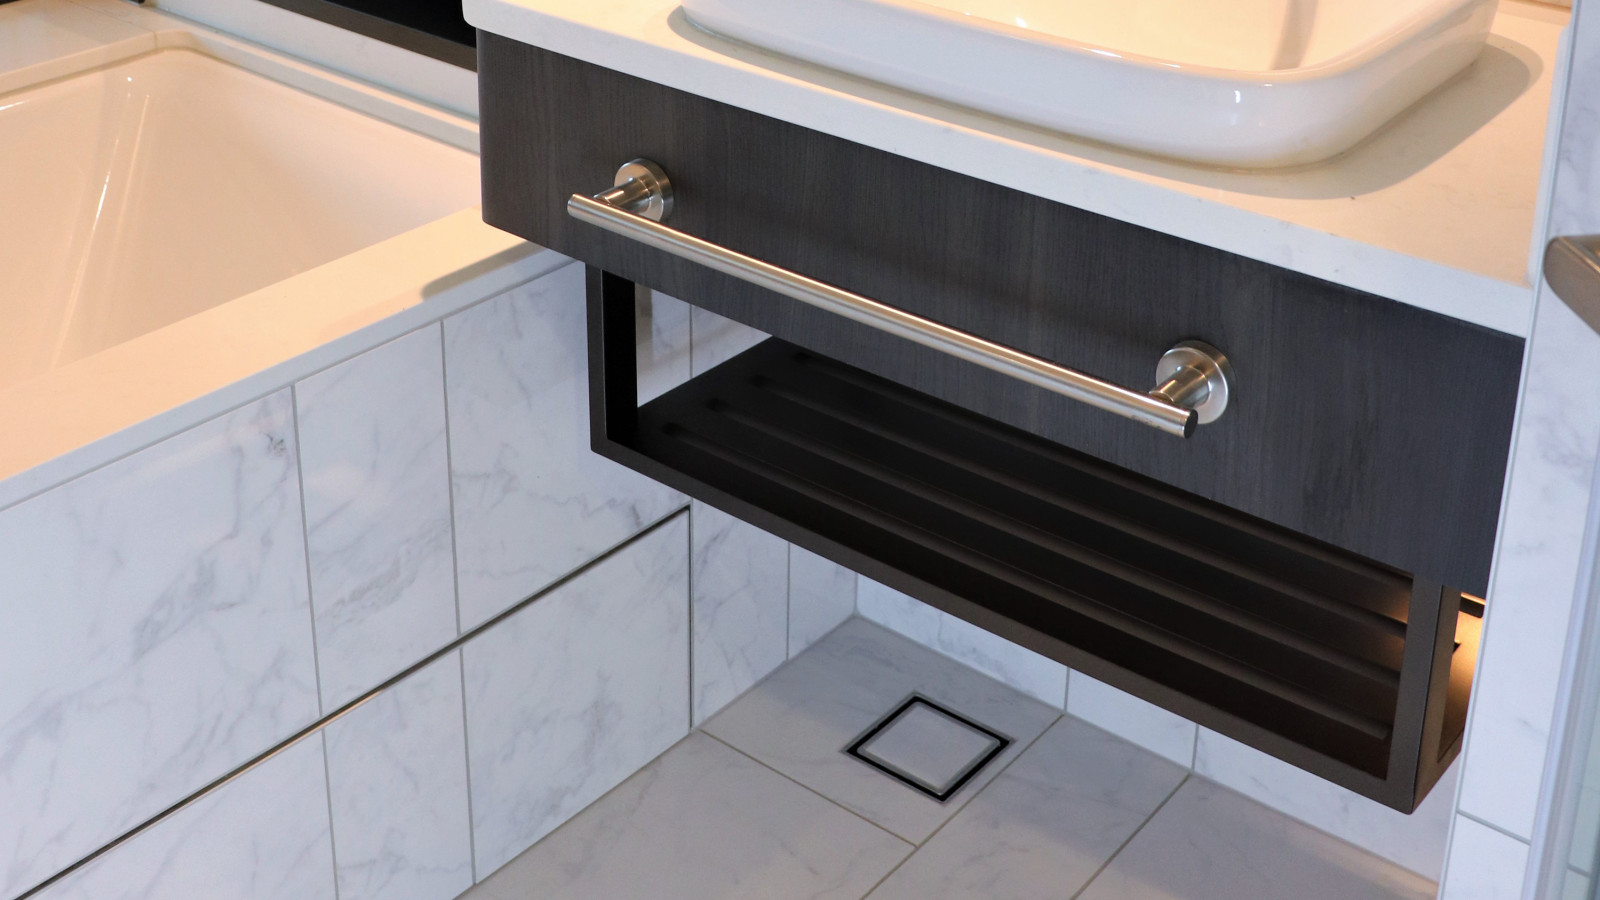 Cordis Hotel Bathroom Tile Insert Invisi Drain Floor Waste 3000x1687px